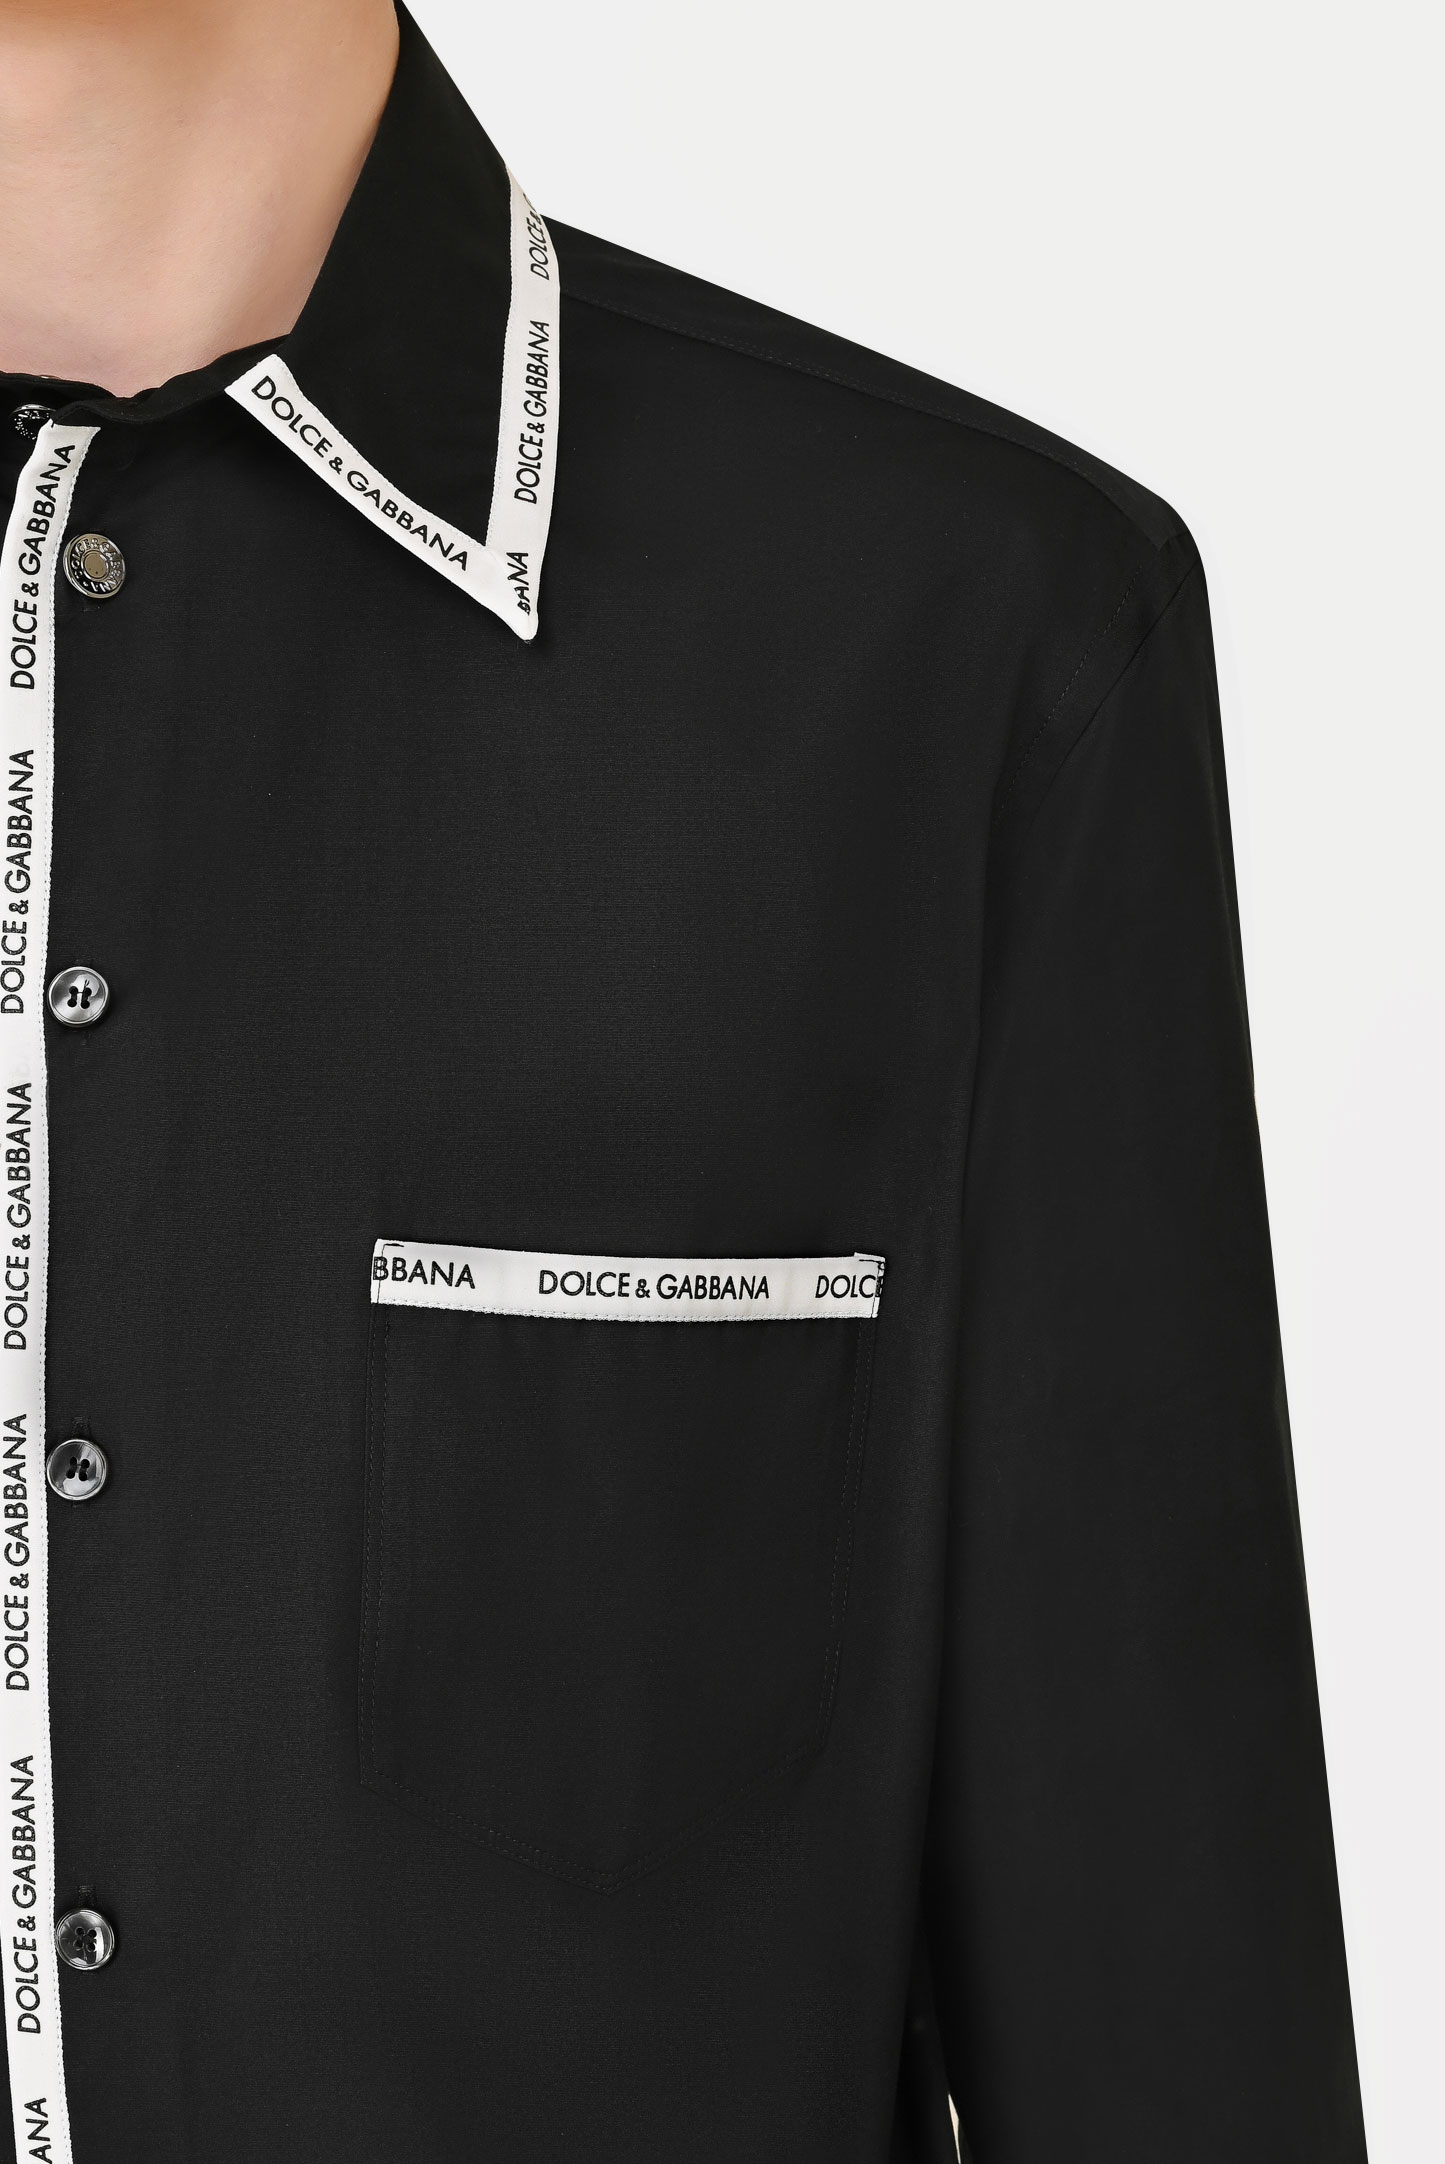 Рубашка DOLCE & GABBANA G5JH1T FU5TI, цвет: Черный, Мужской